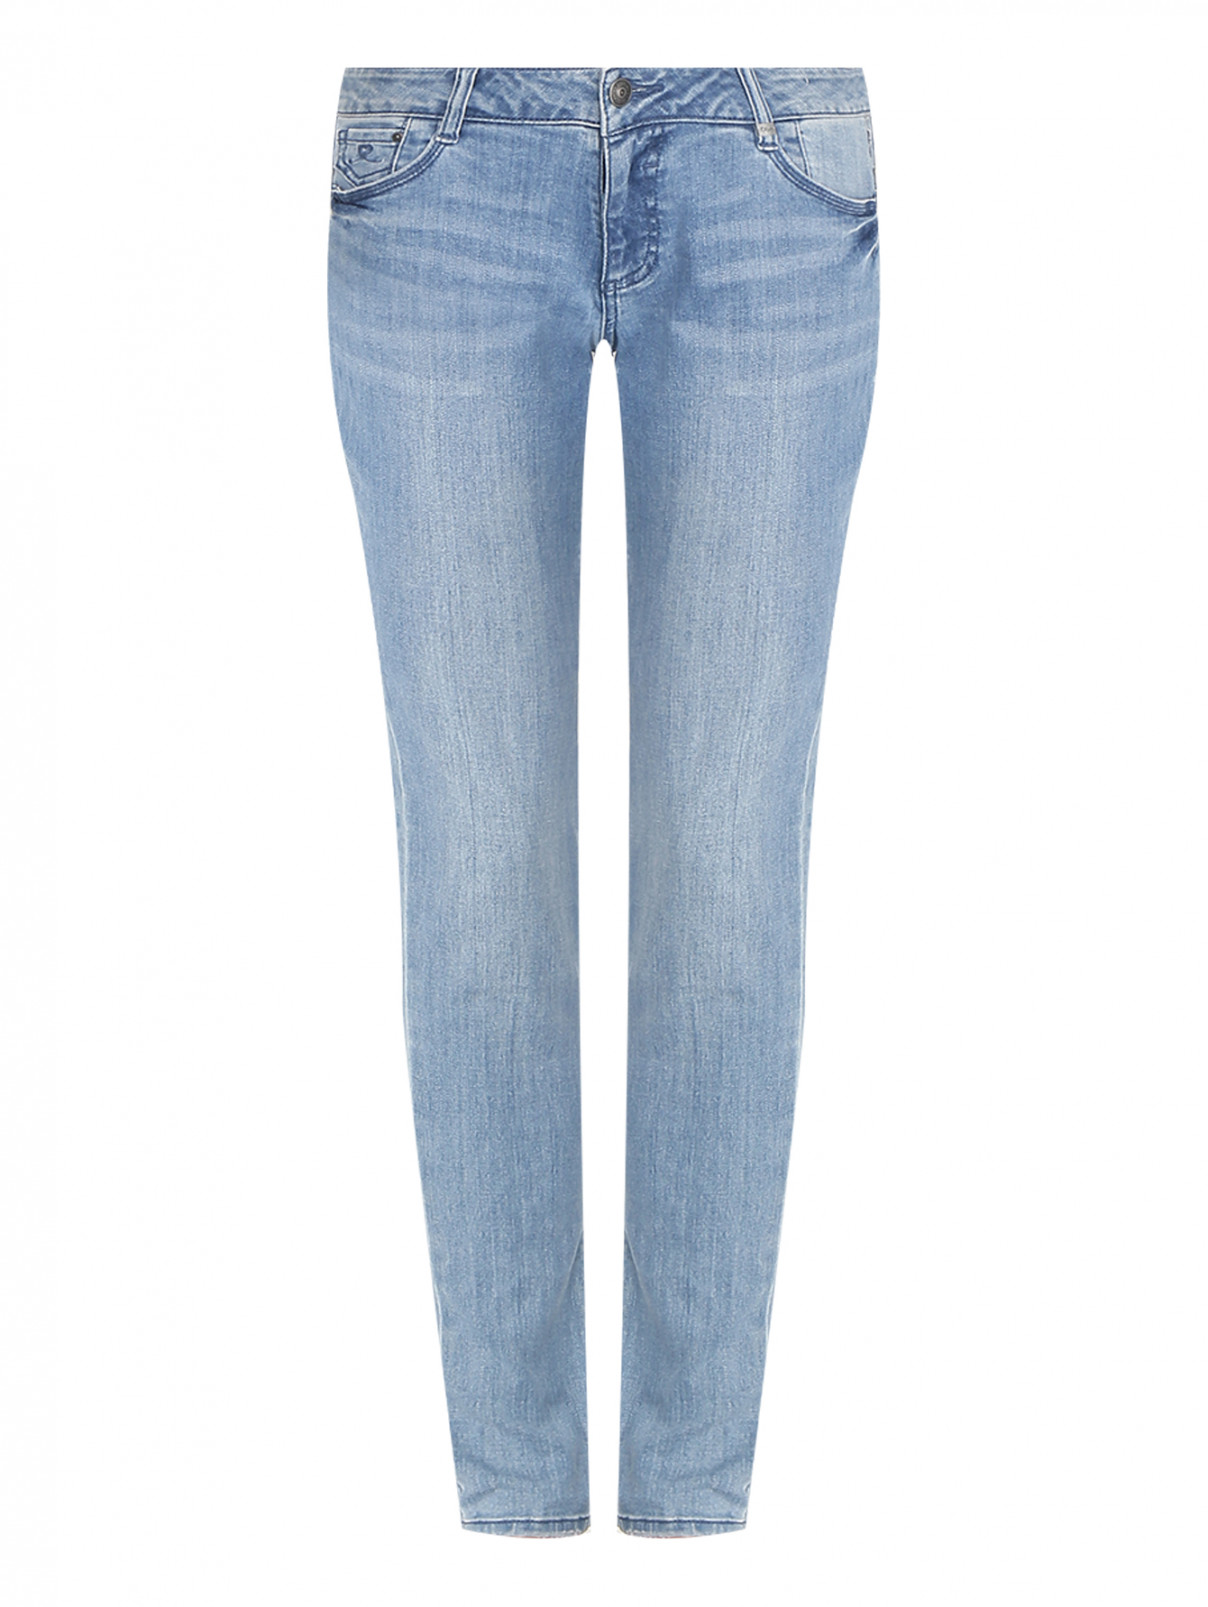 Базовые узкие джинсы из хлопка S.Oliver  –  Общий вид  – Цвет:  Синий